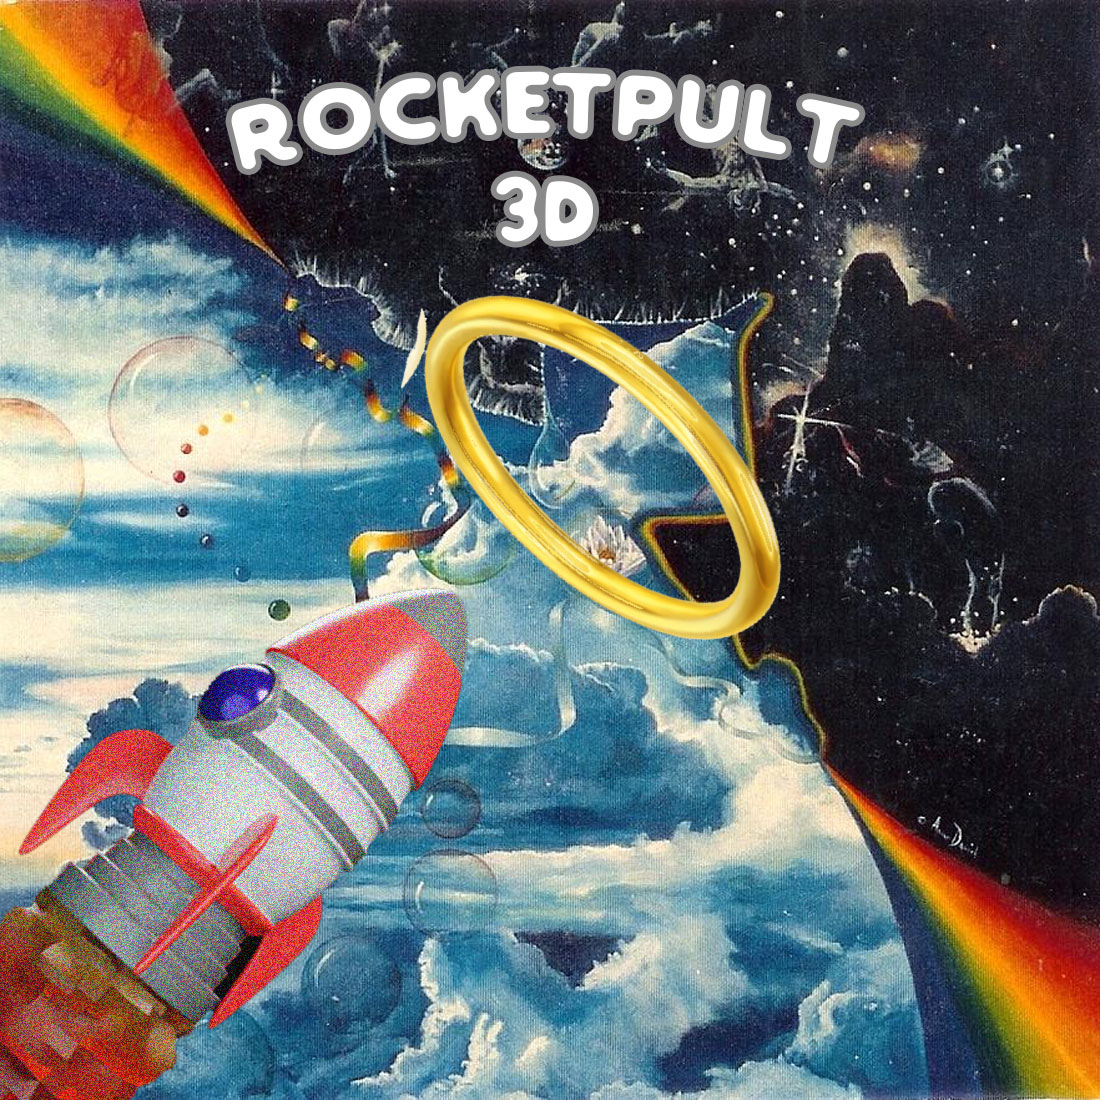 ROCKETPULT 3D